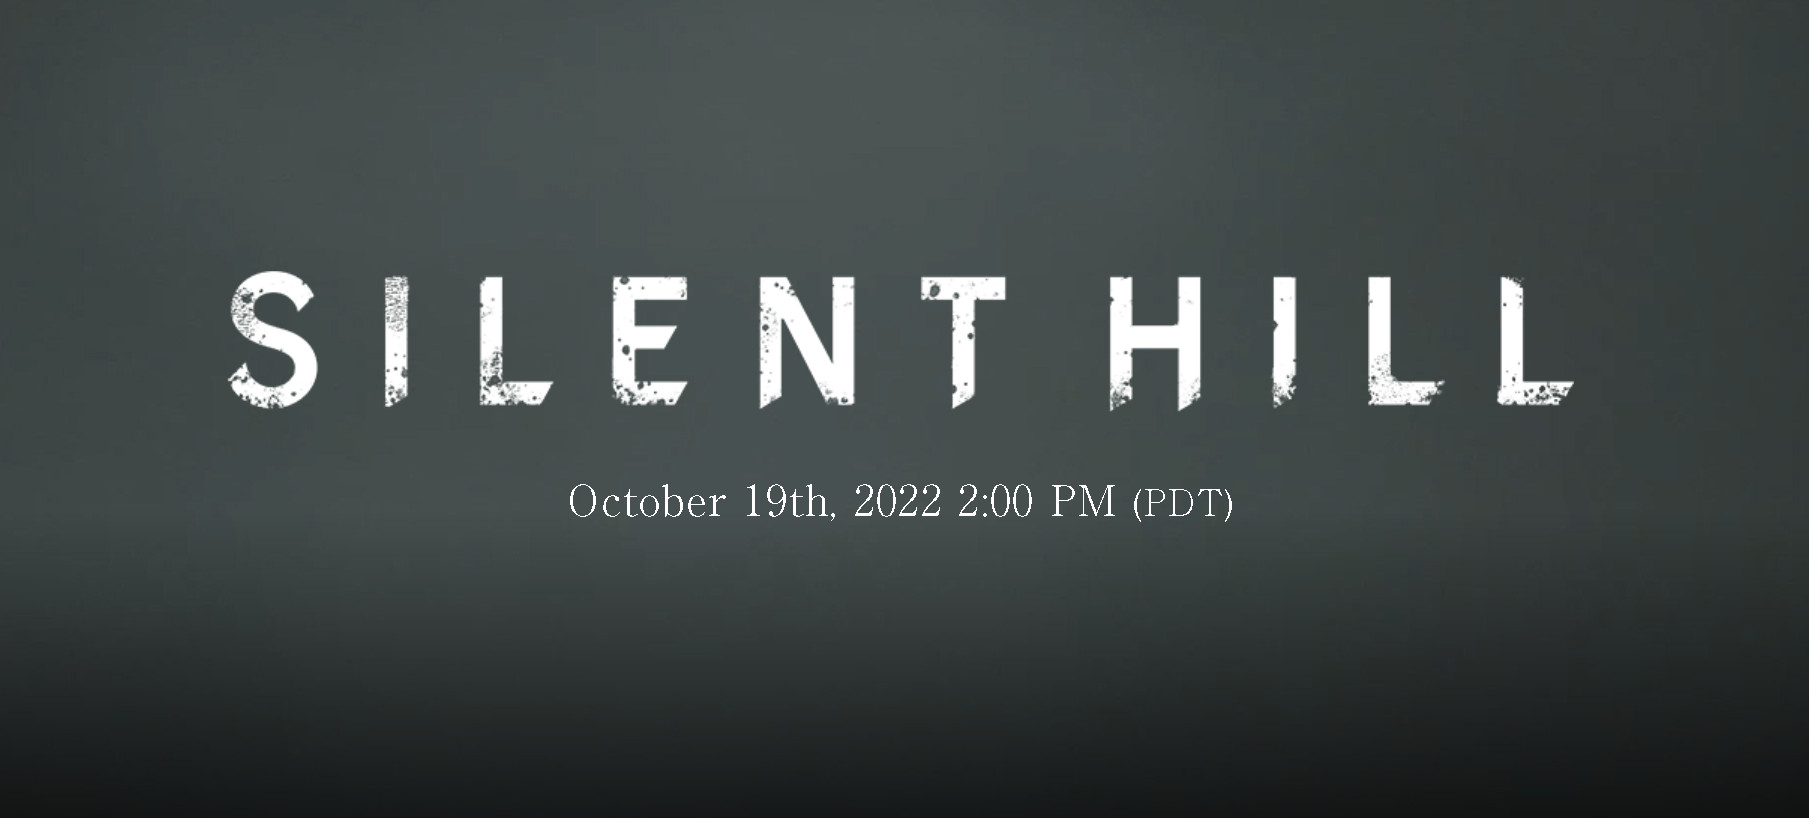 Silent Hill Series akan Mendapatkan Update Terbaru Minggu Ini